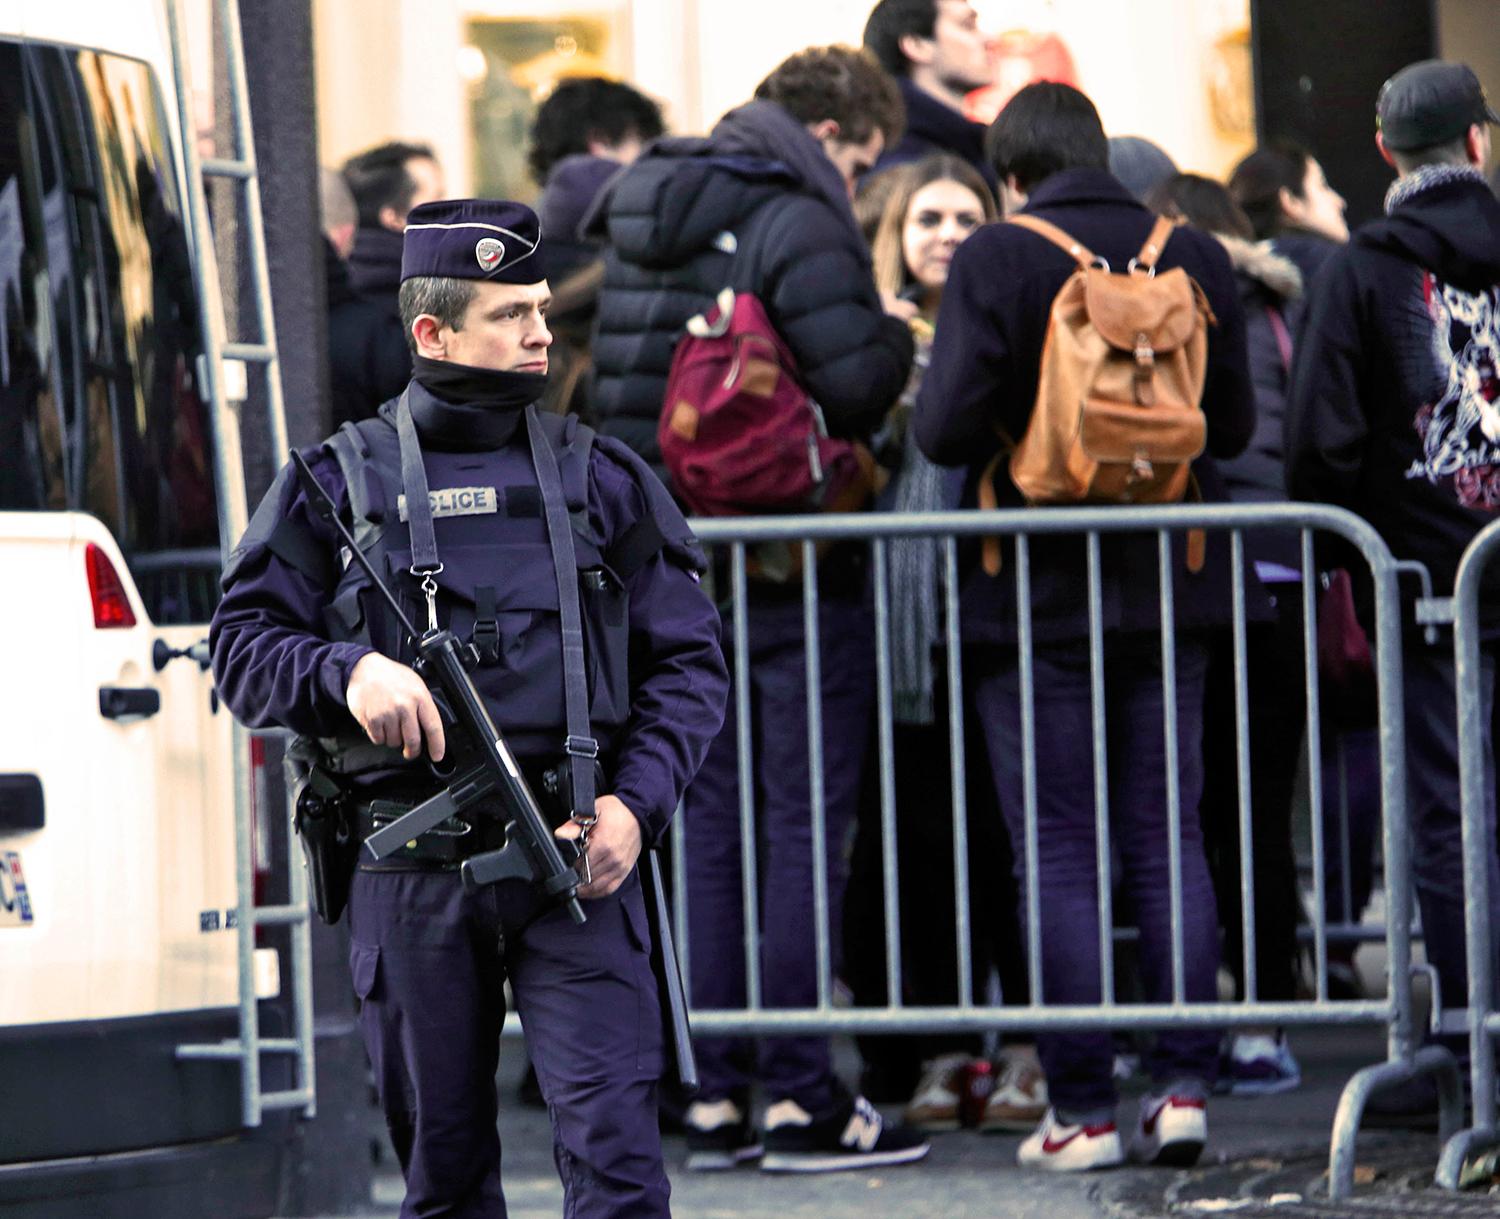 Tung polisbevakning av Eagles of Metal Deaths första koncert i Paris efter terrordåden.